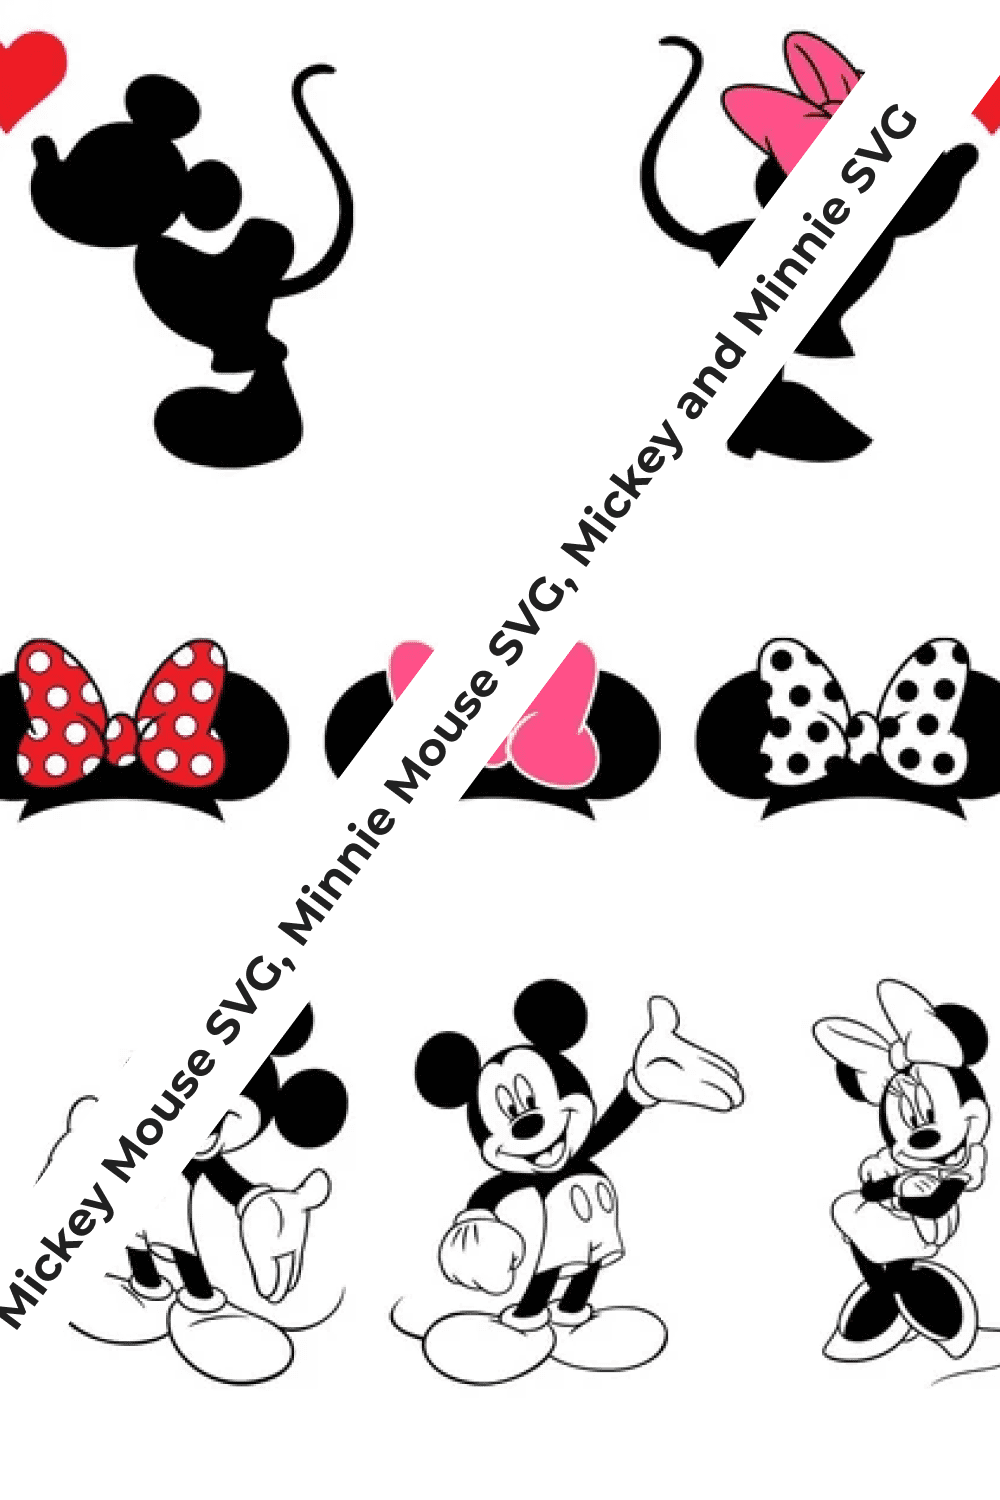 Funny Mickey set.